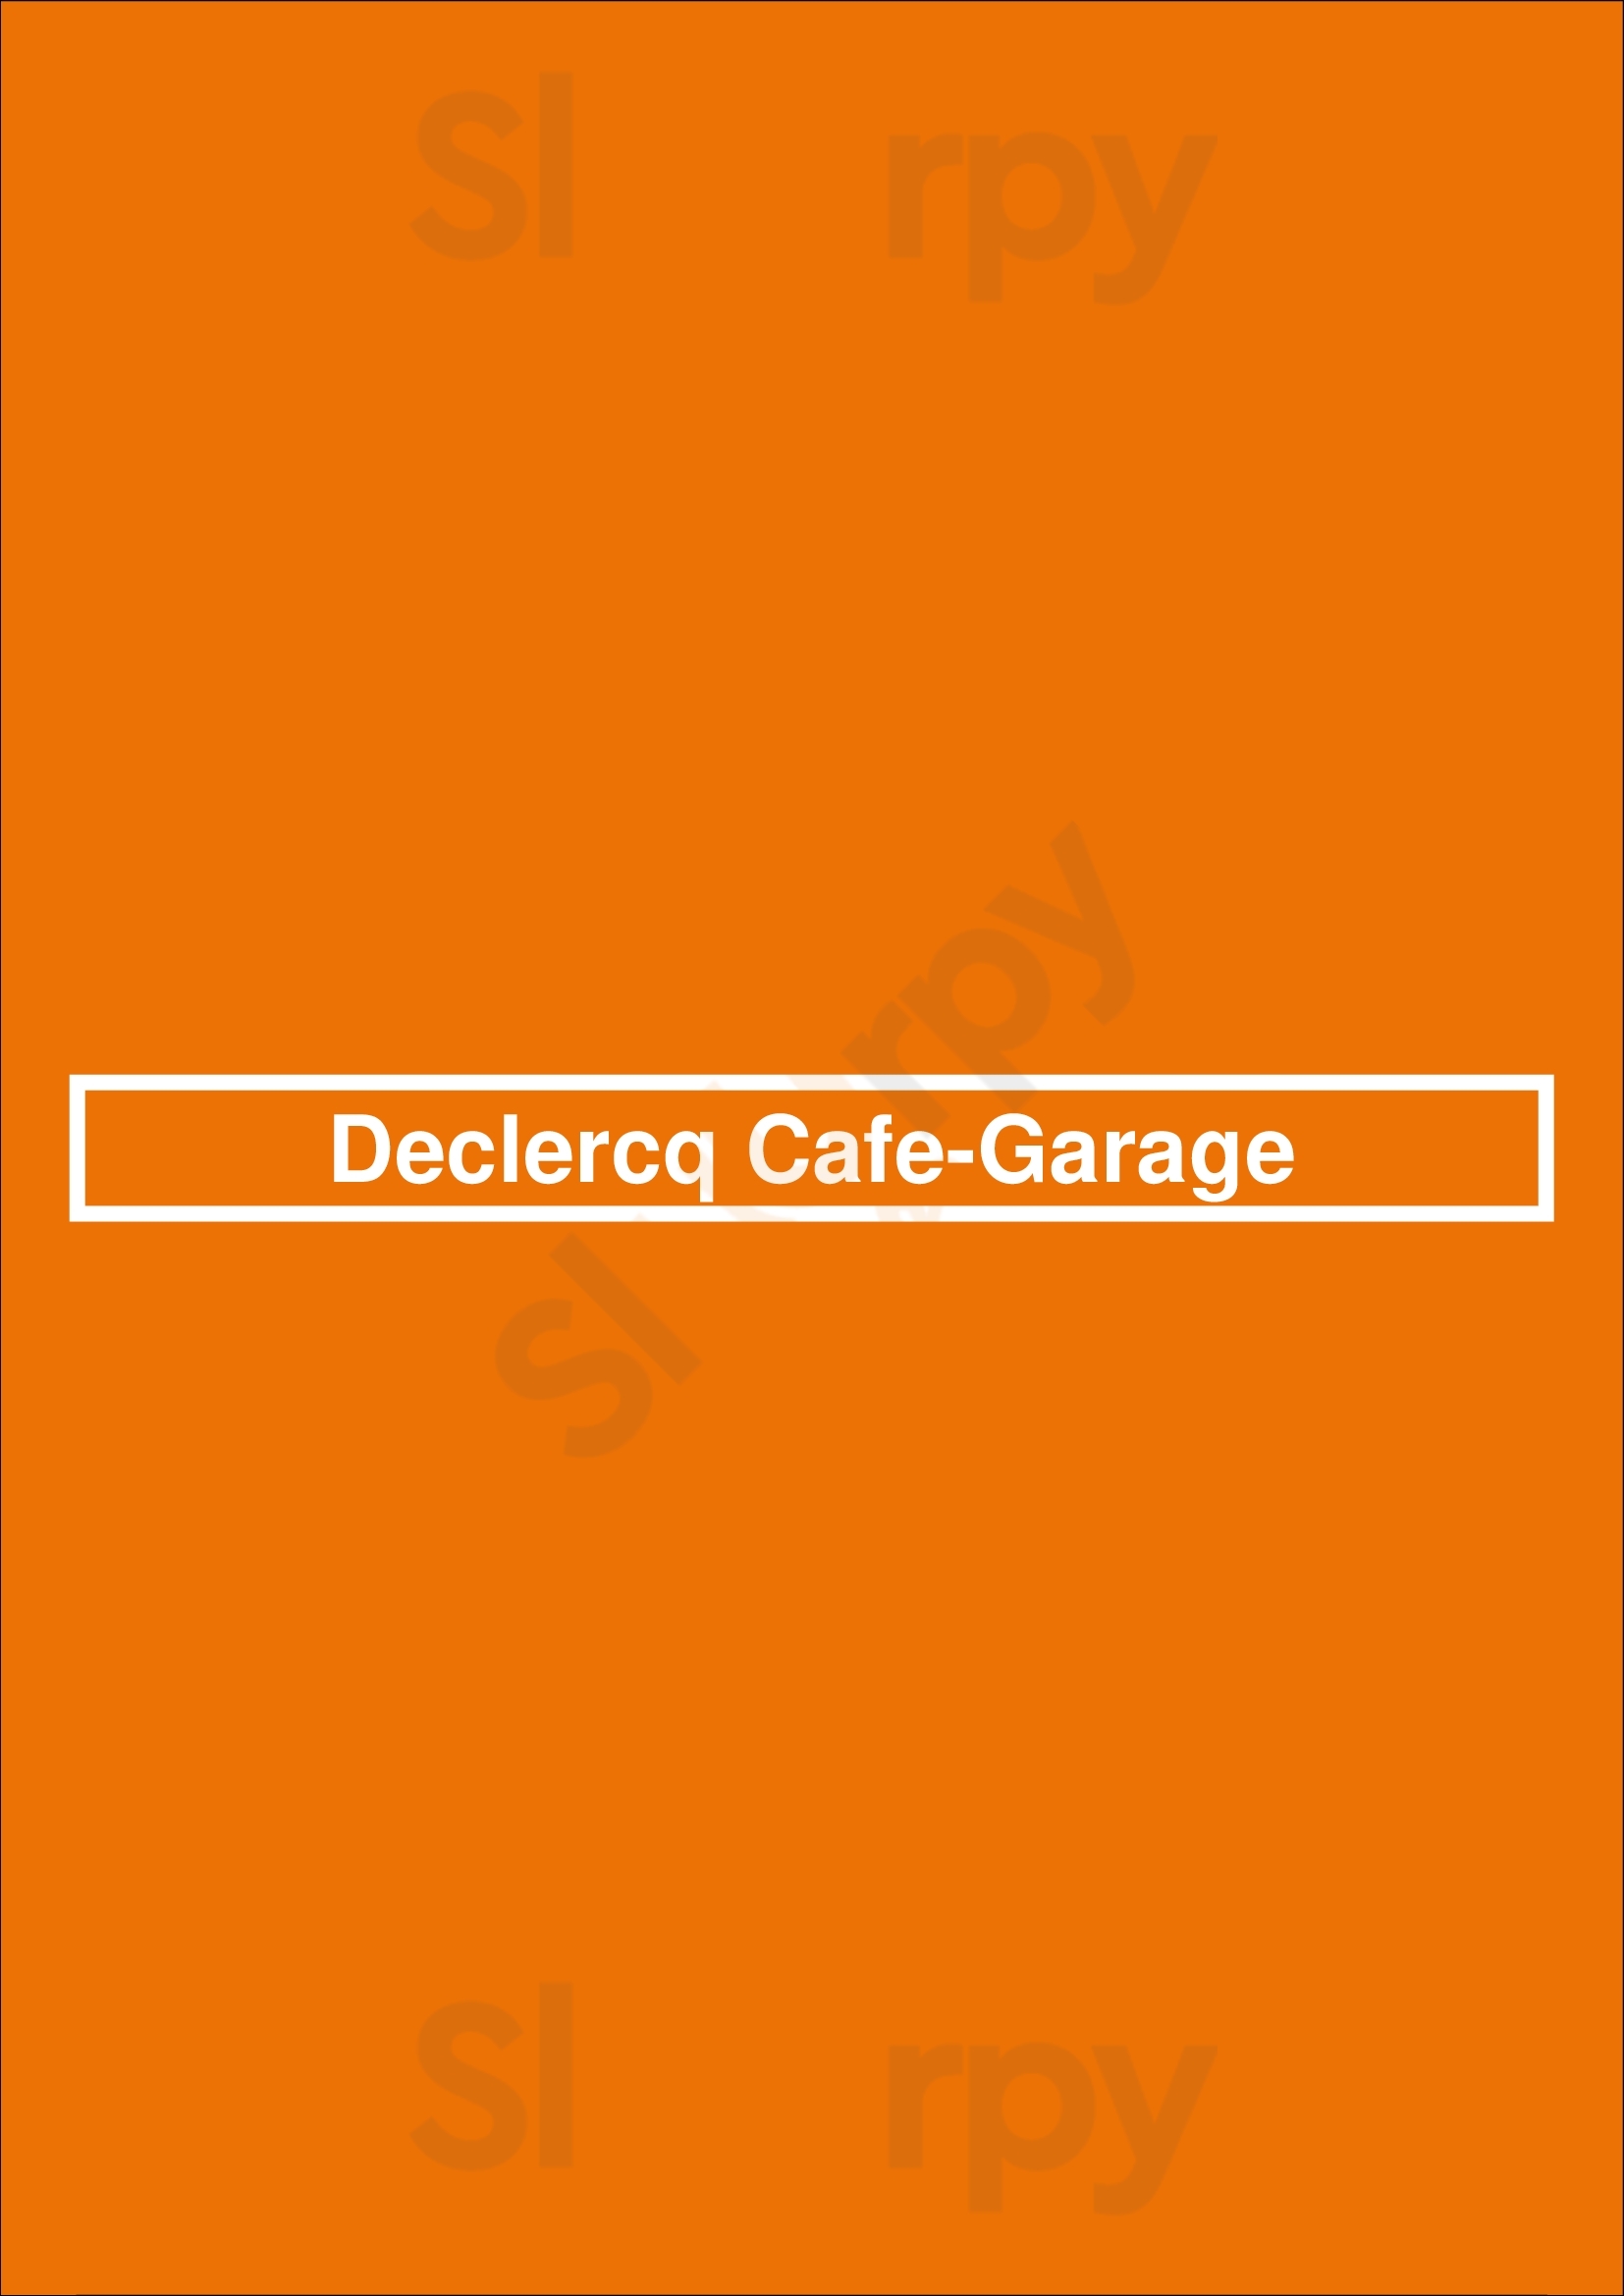 Declercq Cafe-garage Bruxelles Menu - 1